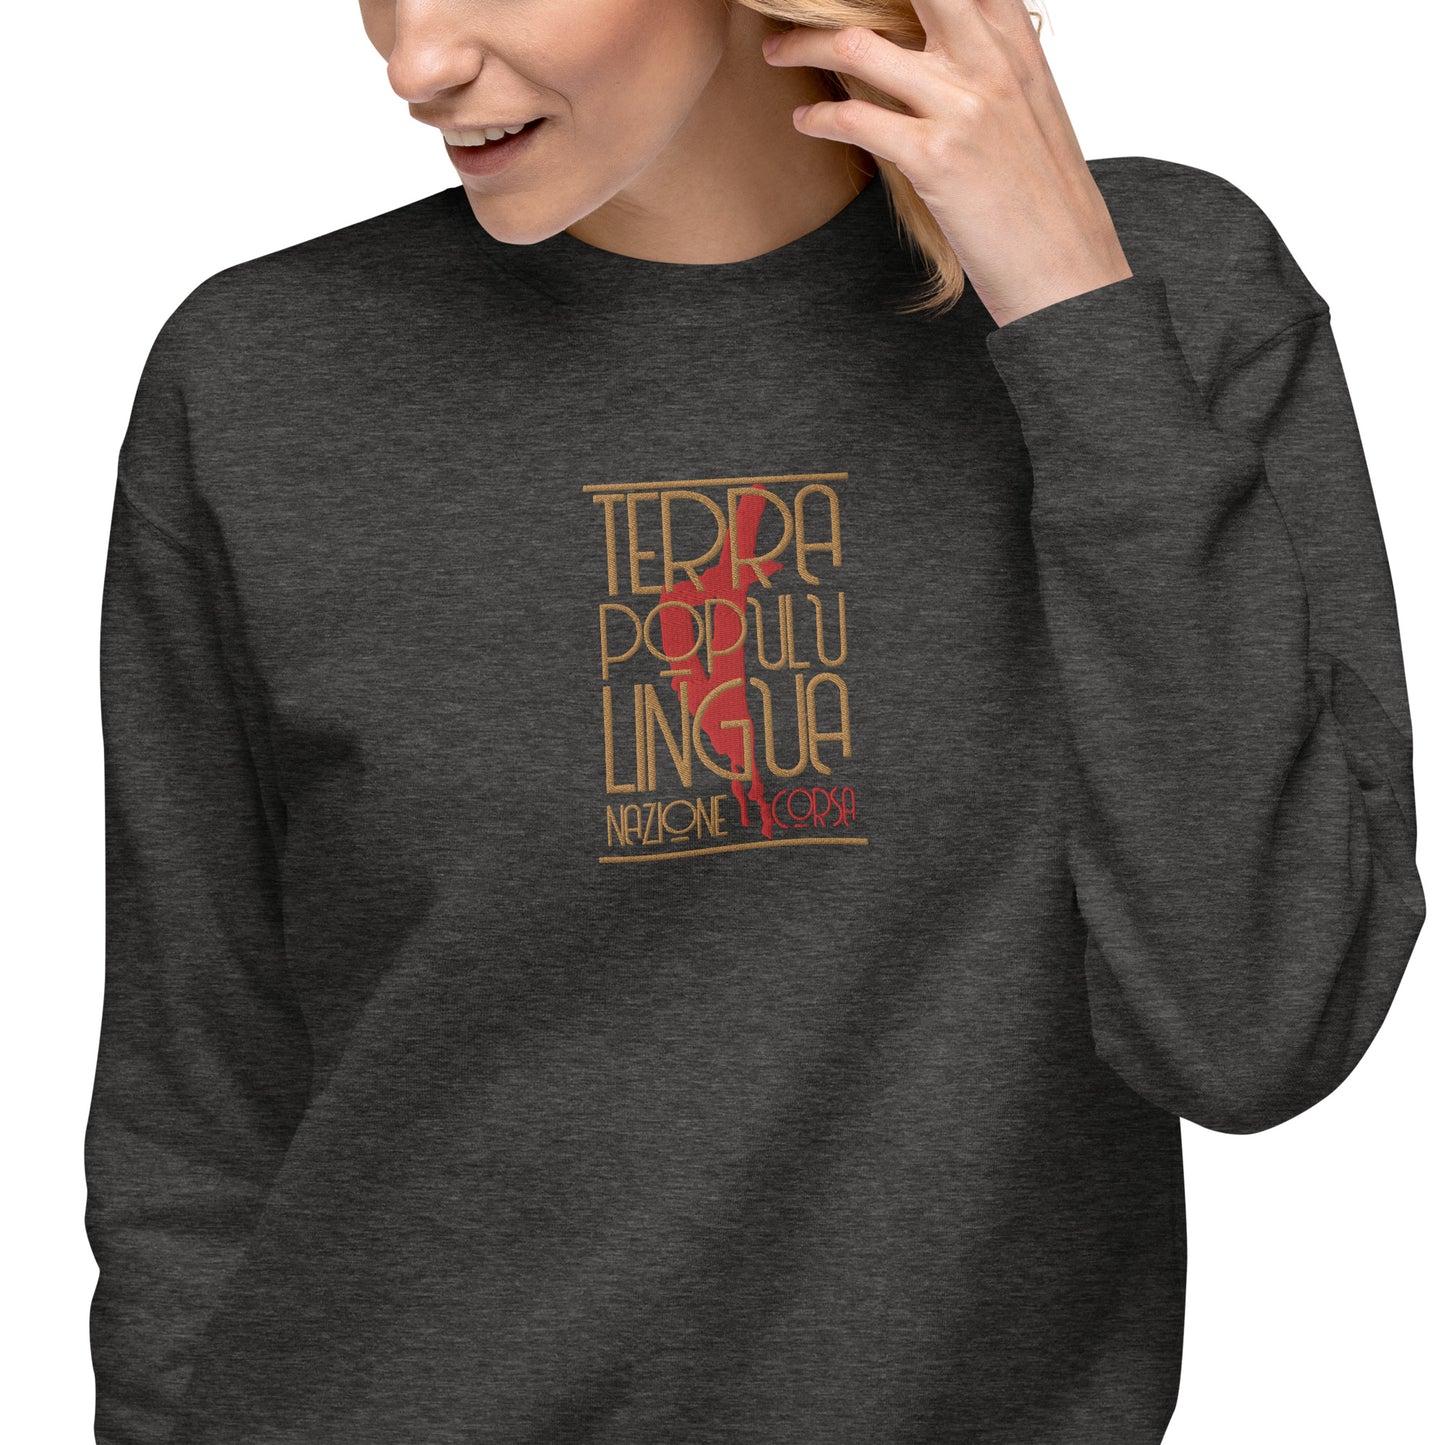 Sweatshirt premium Brodé Terra Populu Lingua Nazione